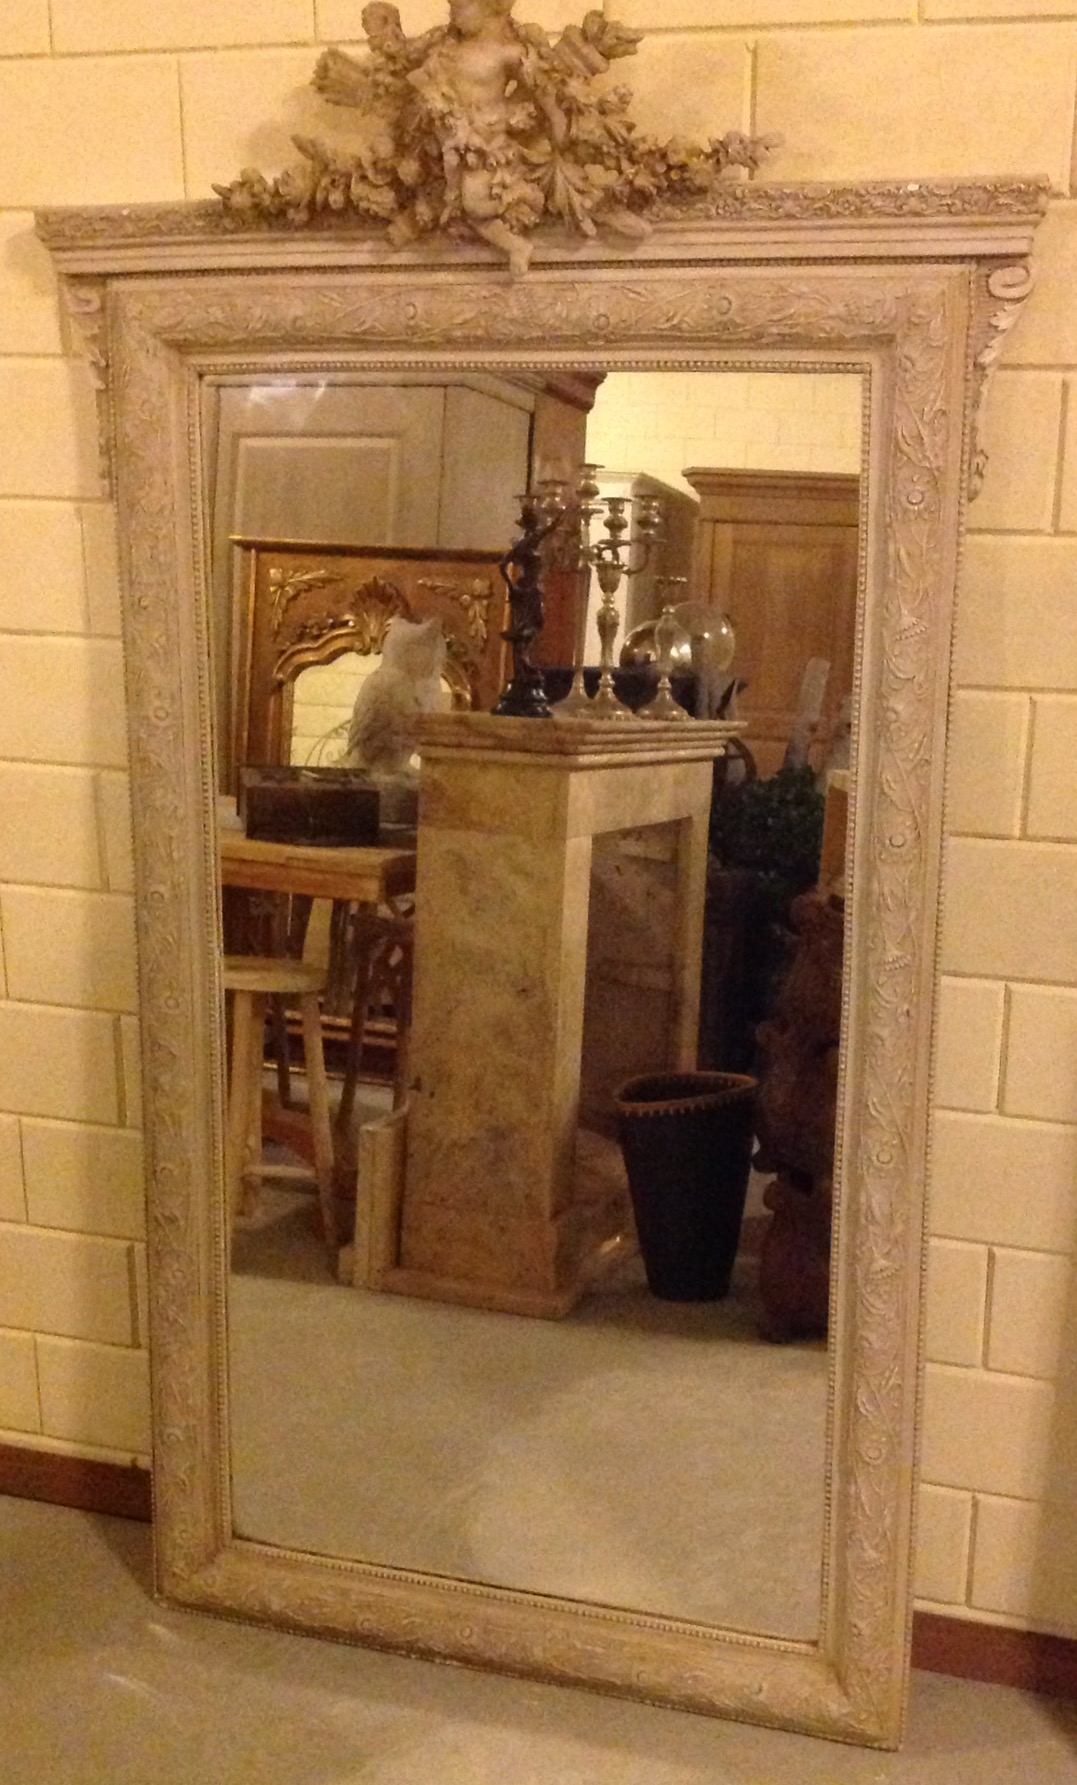 Kopie antieke spiegel. The Old Way